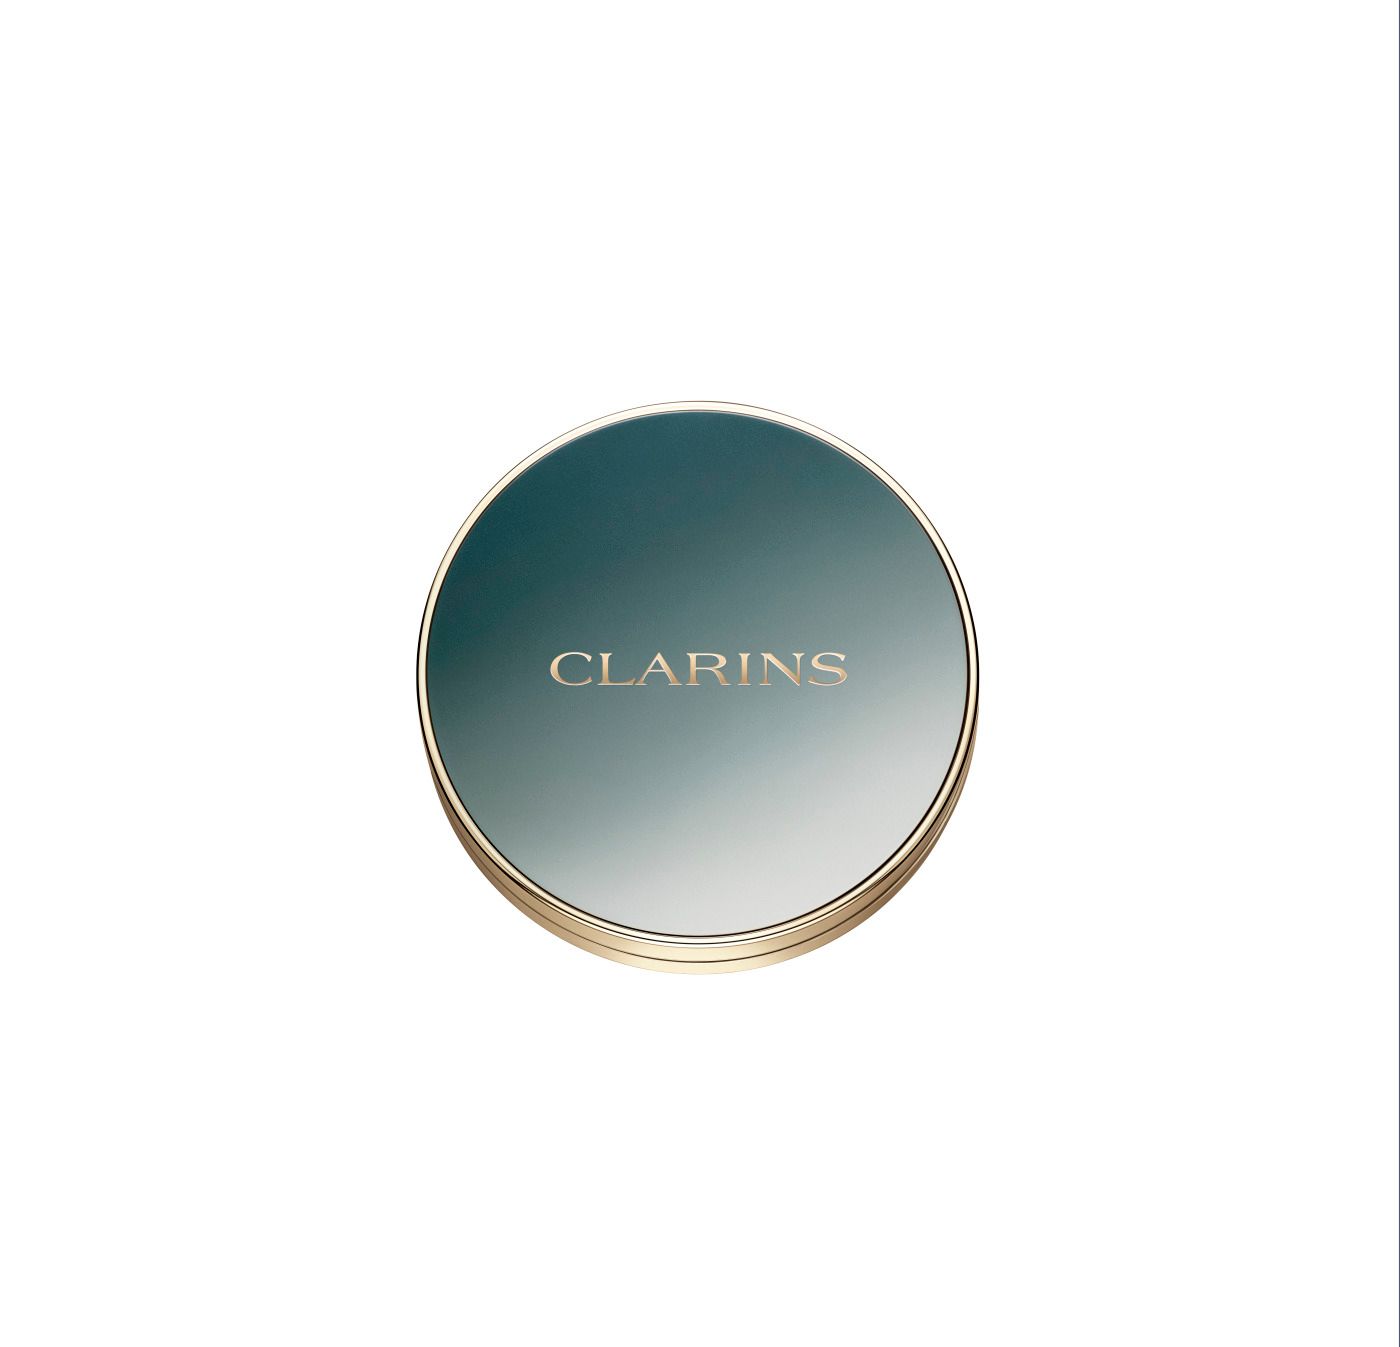 Clarins 4 palette eyeshadow 05 Jade